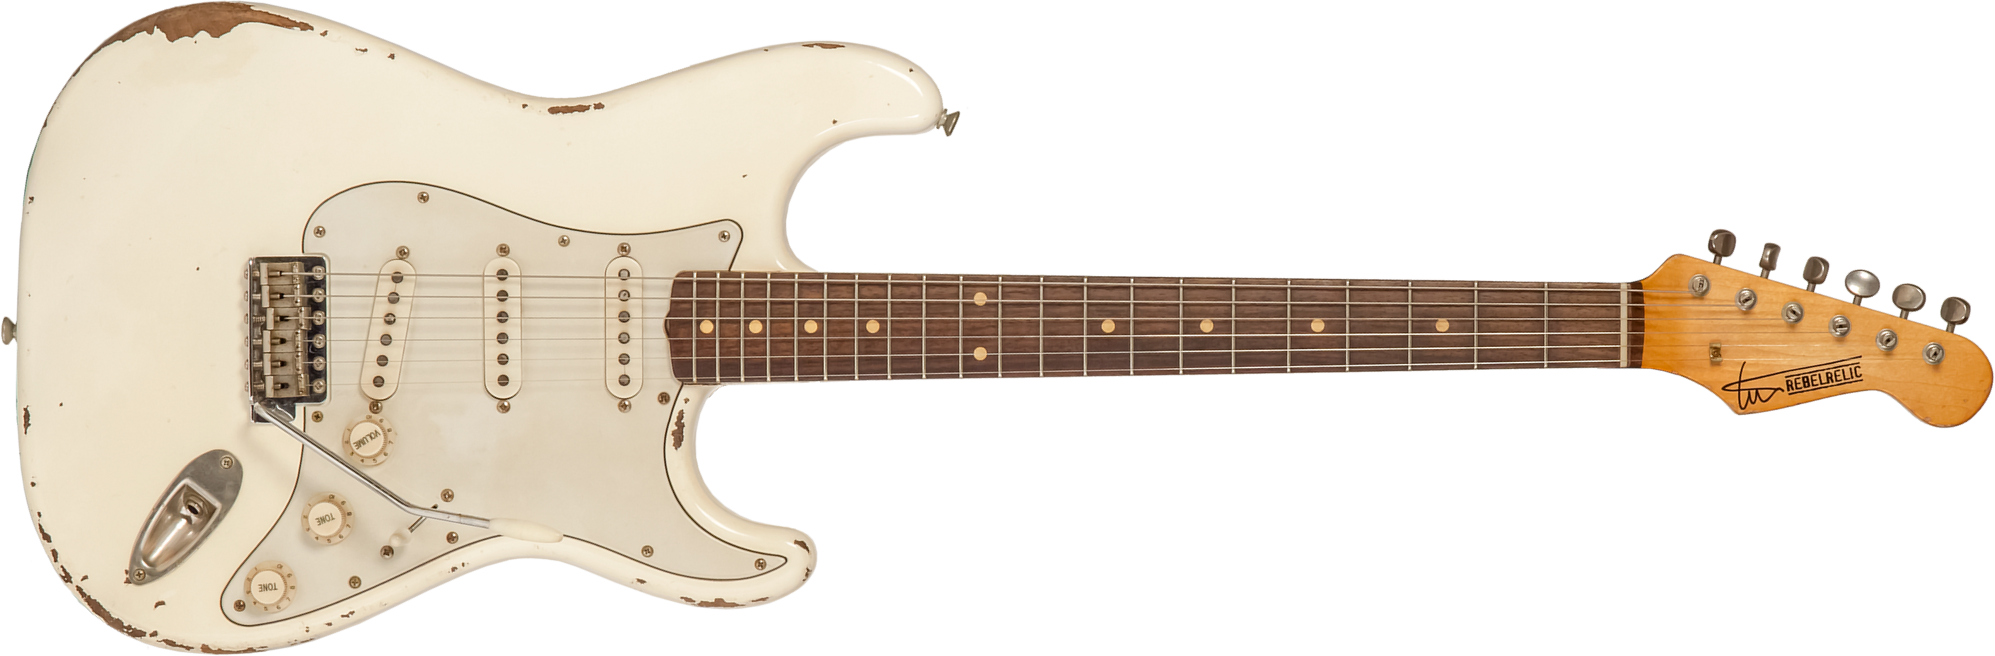 Rebelrelic S-series 1962 3s Trem Rw #231002 - Olympic White - Elektrische gitaar in Str-vorm - Main picture